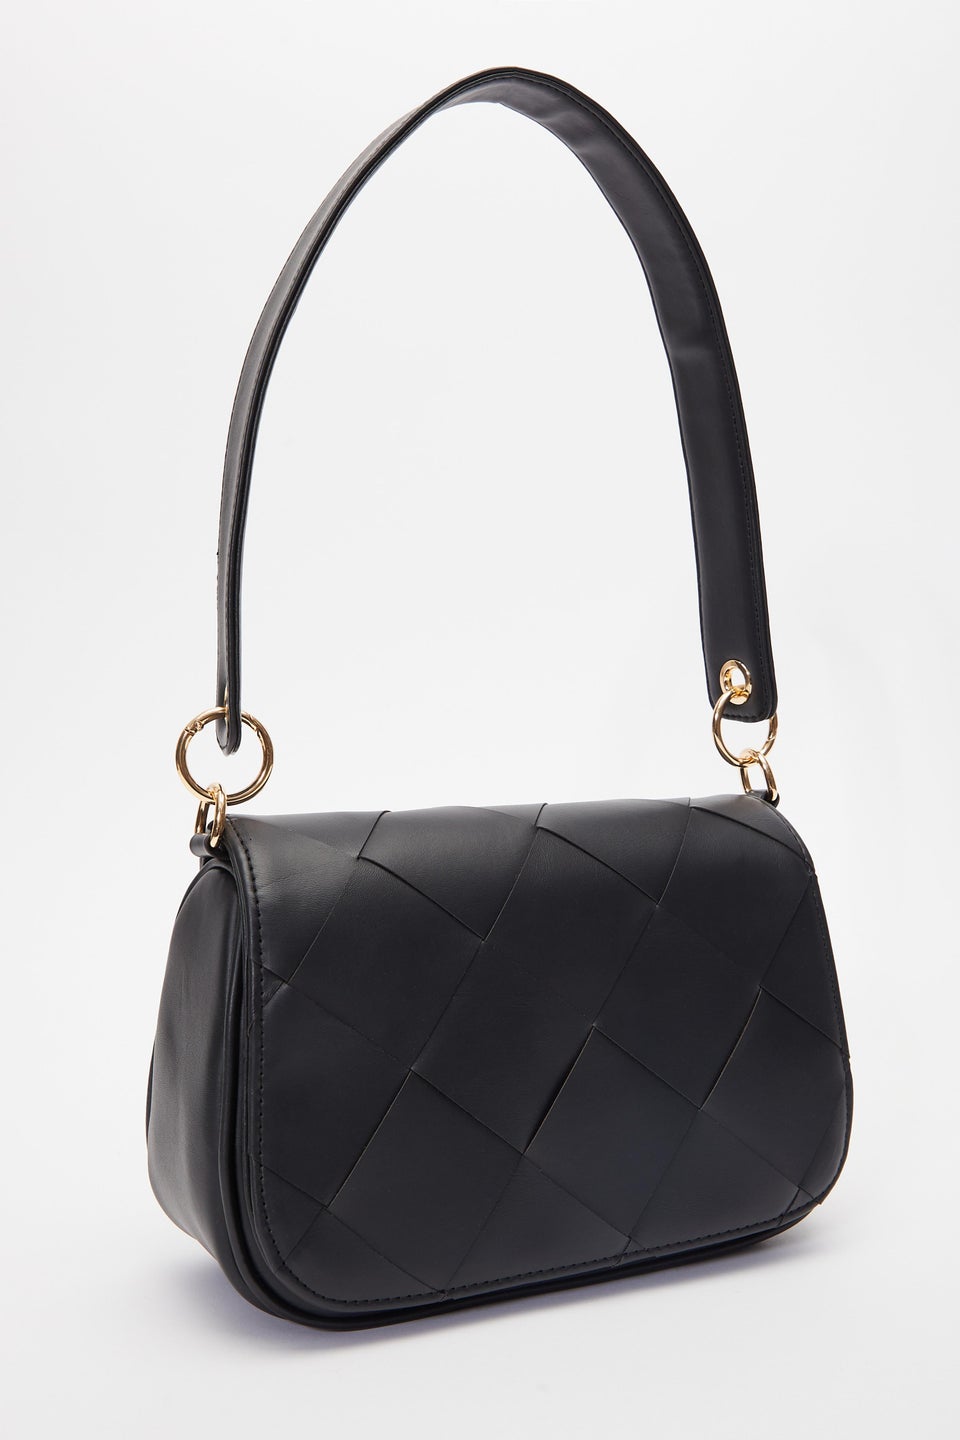 Черная плетеная сумка на плечо Quiz сумка шоппер recom повседневная текстиль полиэстер искусственная кожа черный